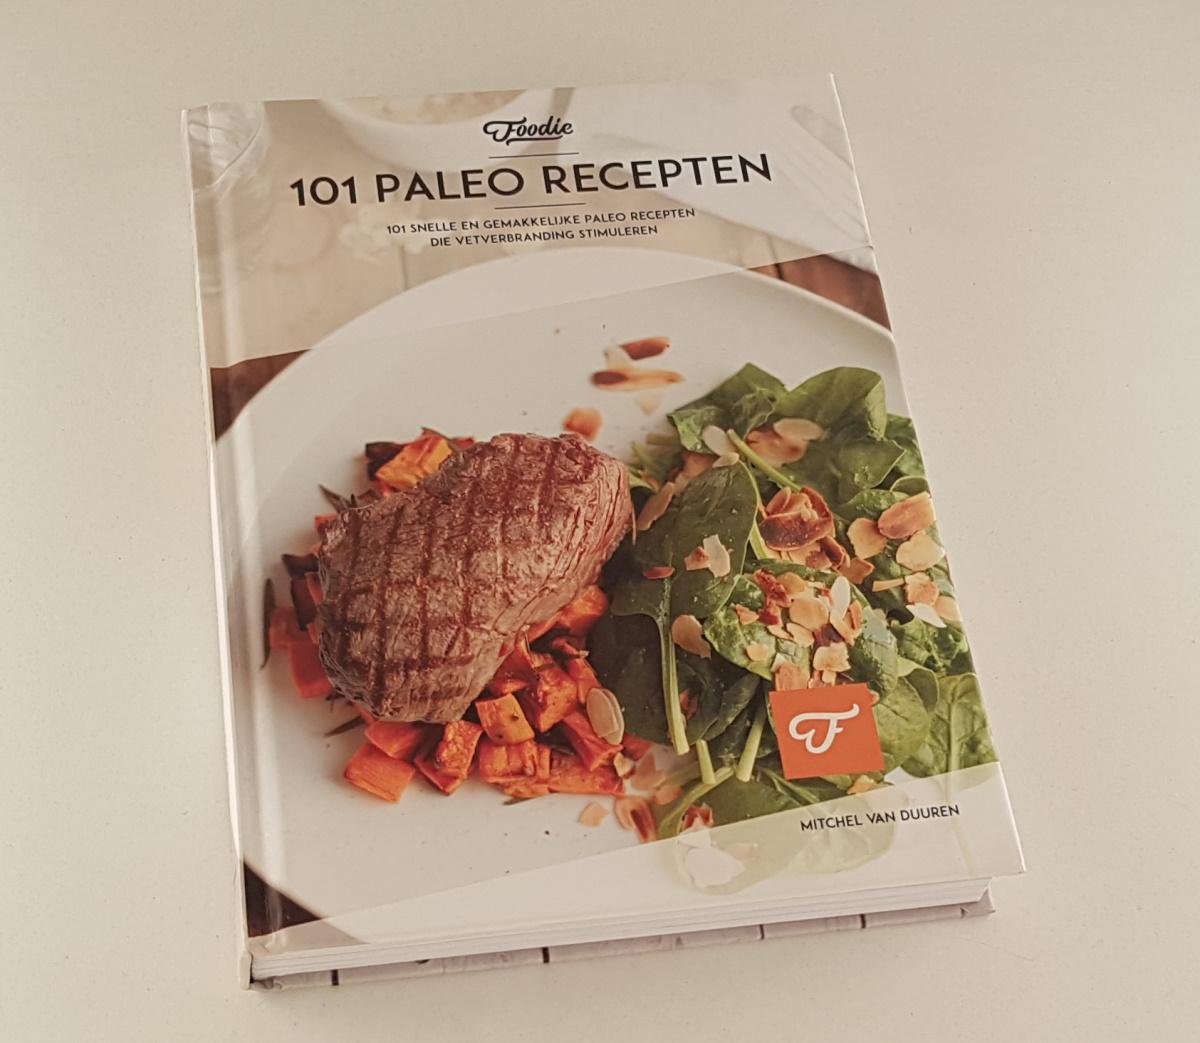 Duuren, Mitchel van - 101 Paleo recepten / 101 snelle en gemakkelijke Paleo recepten die vetverbranding stimuleren